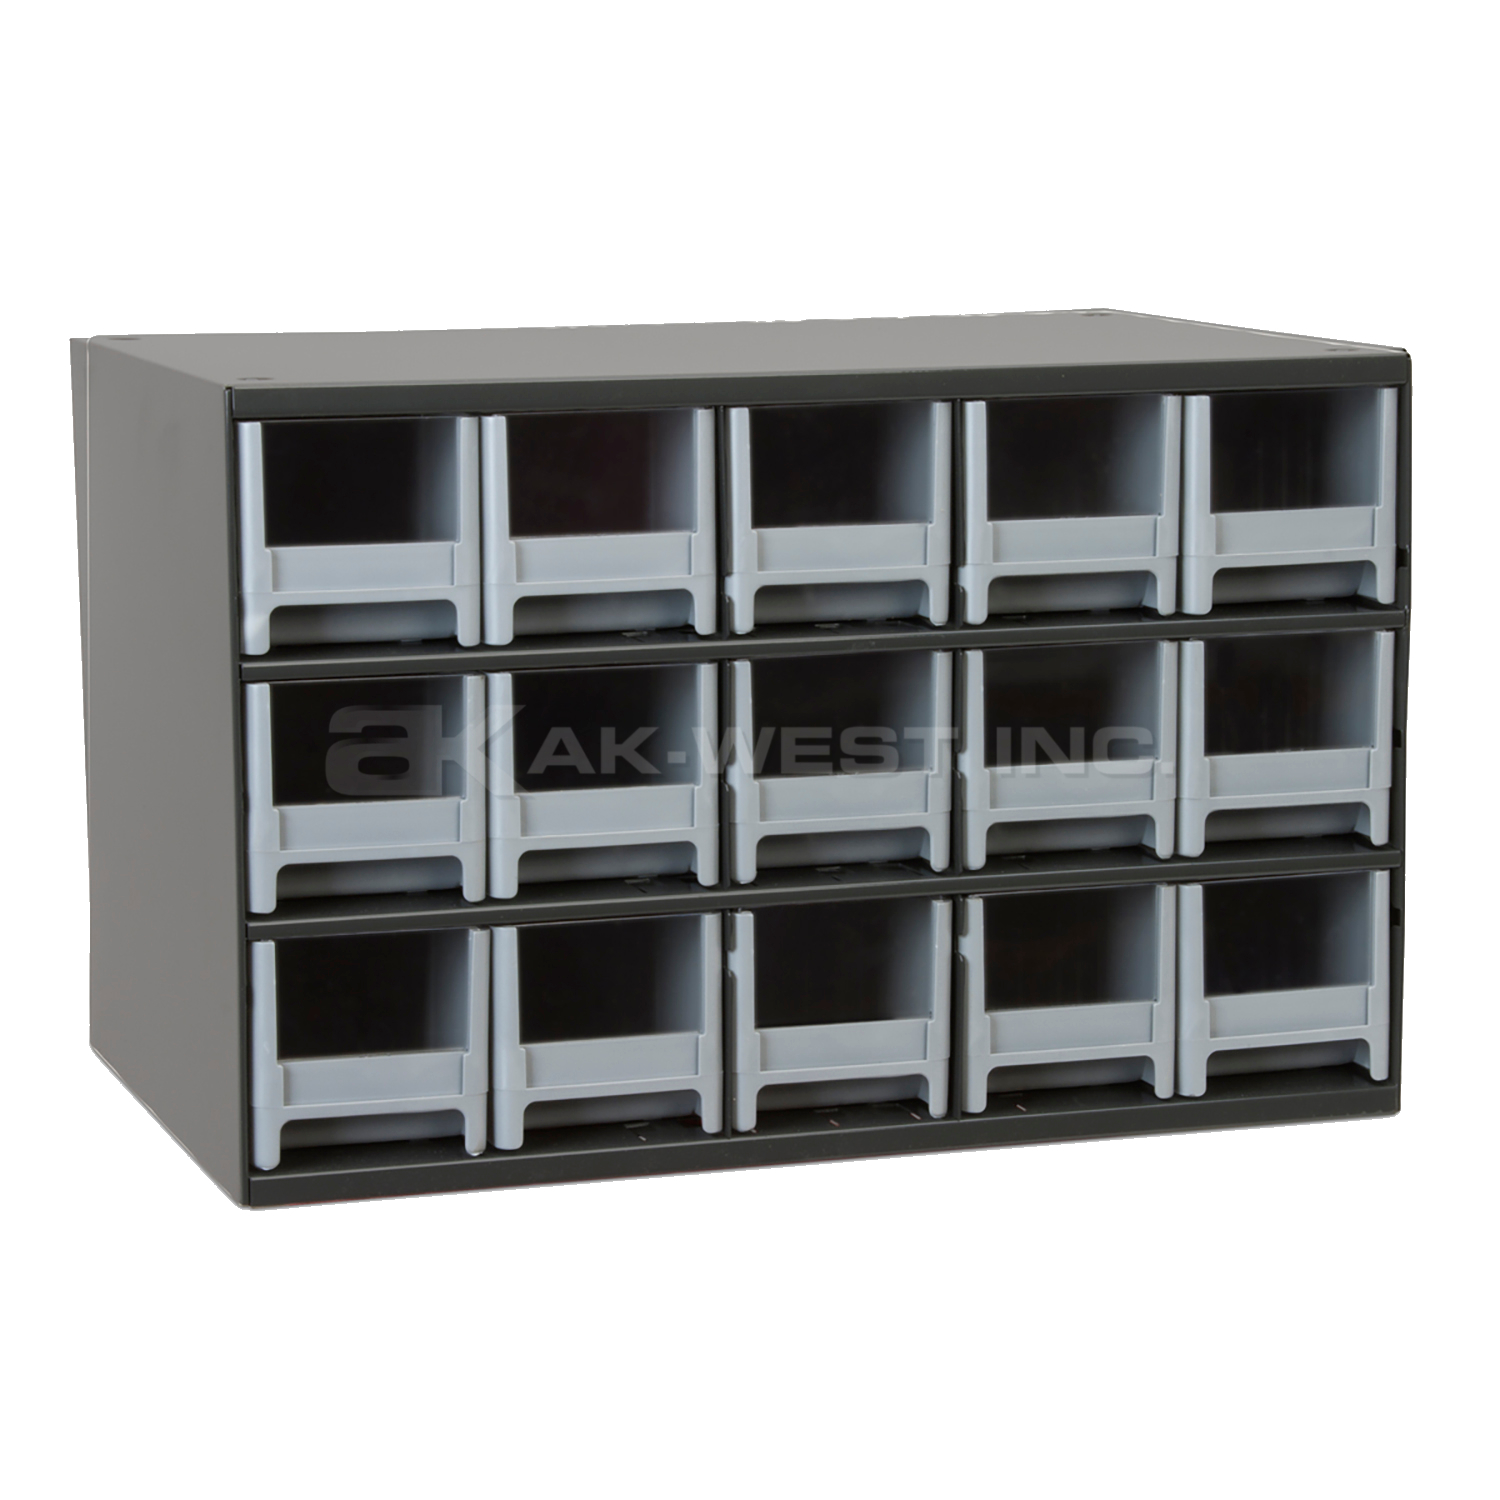 Grey, 17" x 11" x 11" Steel Modular Cabinet w/ 15 Drawers - Drawer Size 3-3/16" x 3-1/16" x 10-9/16"